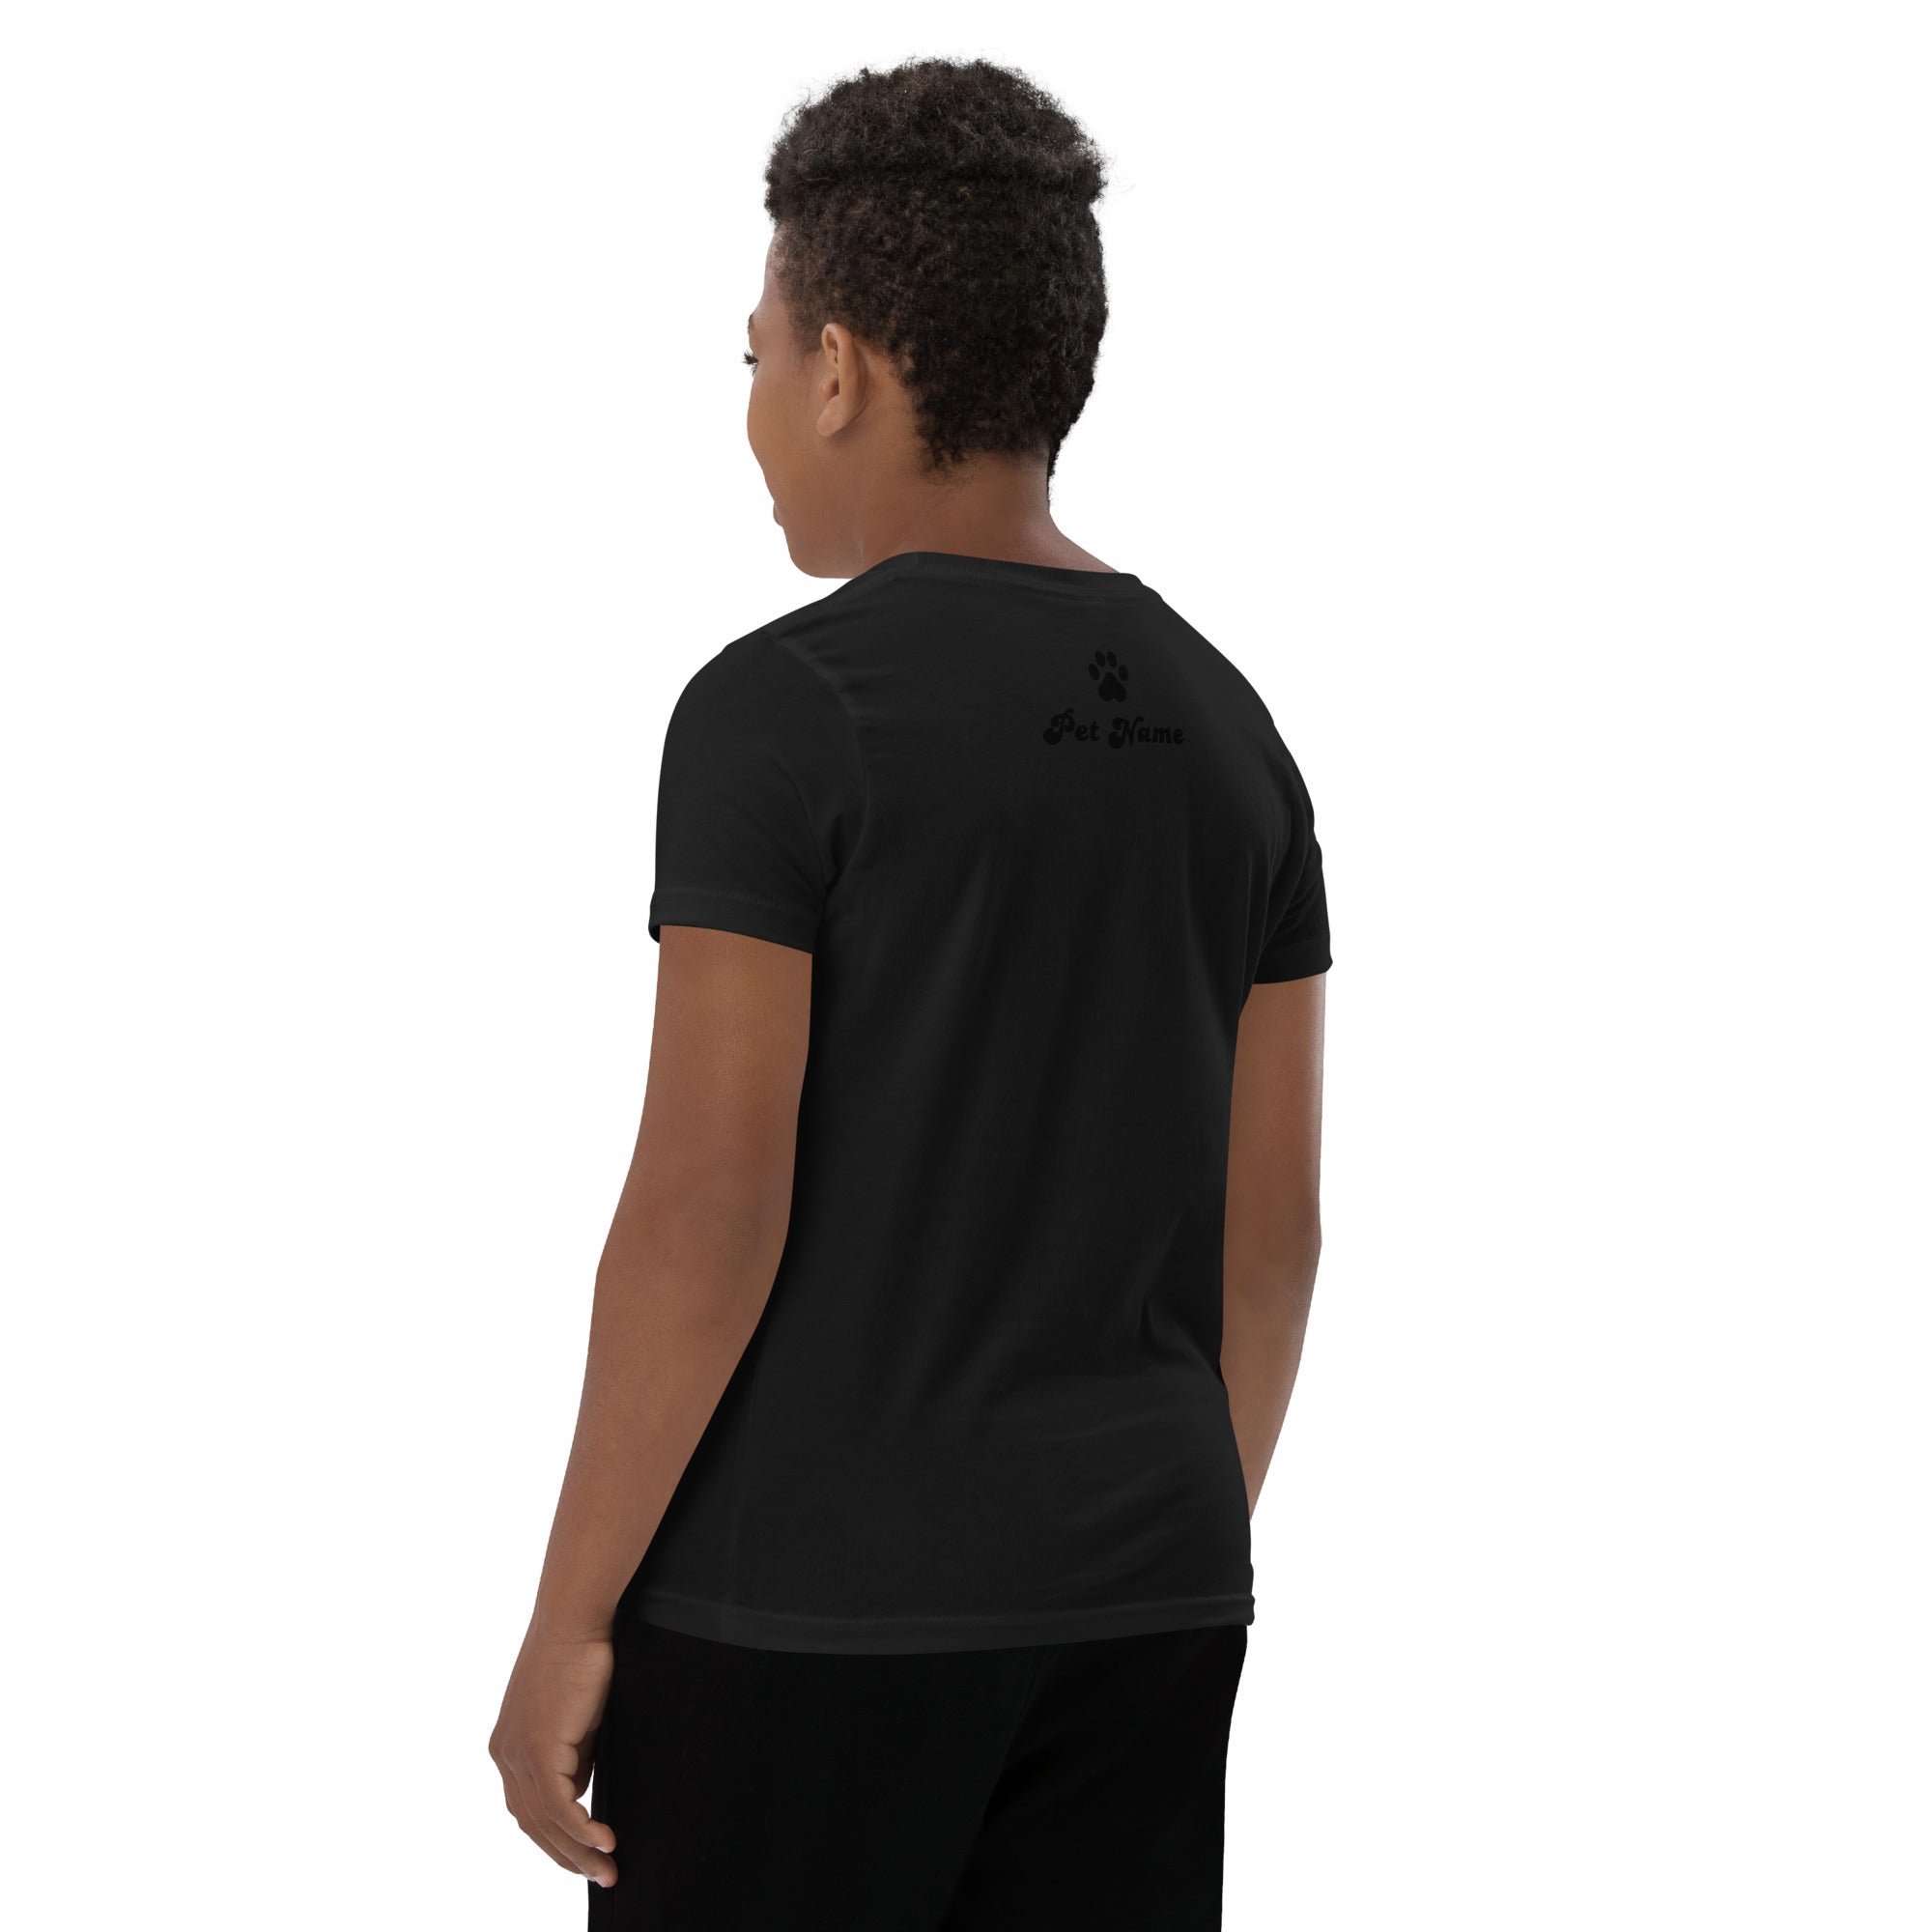 Maltese Youth Short Sleeve T-Shirt